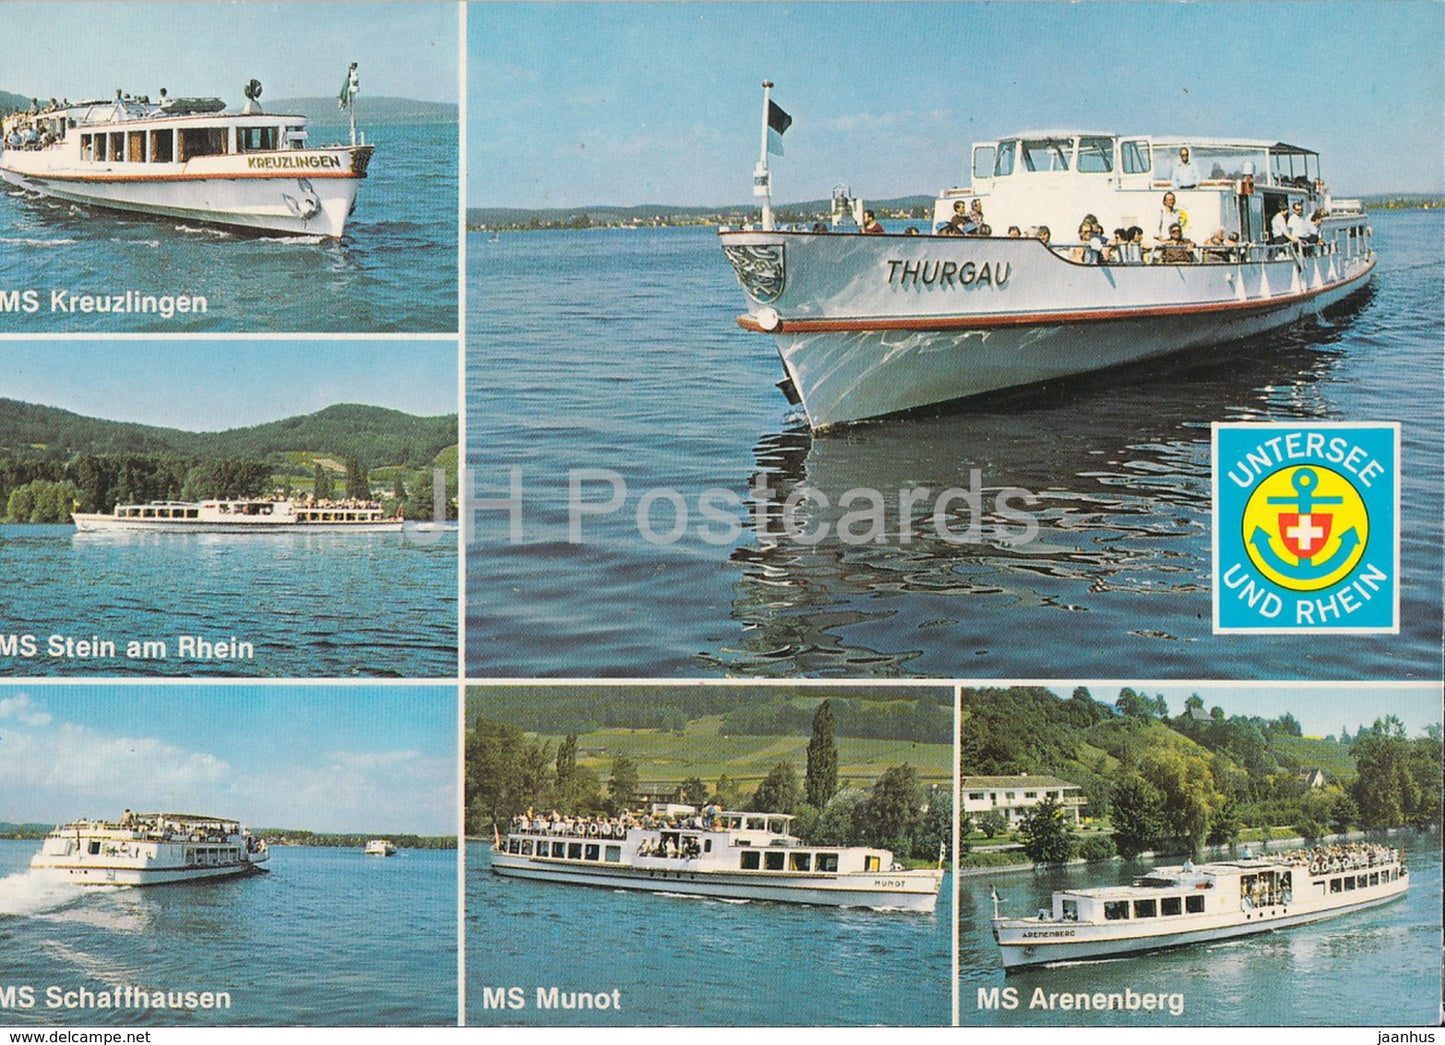 Untersee und Rhein - MS Kreuzlingen - Stein am Rhein - Schaffhausen - Thurgau - Munot - Switzerland - unused - JH Postcards